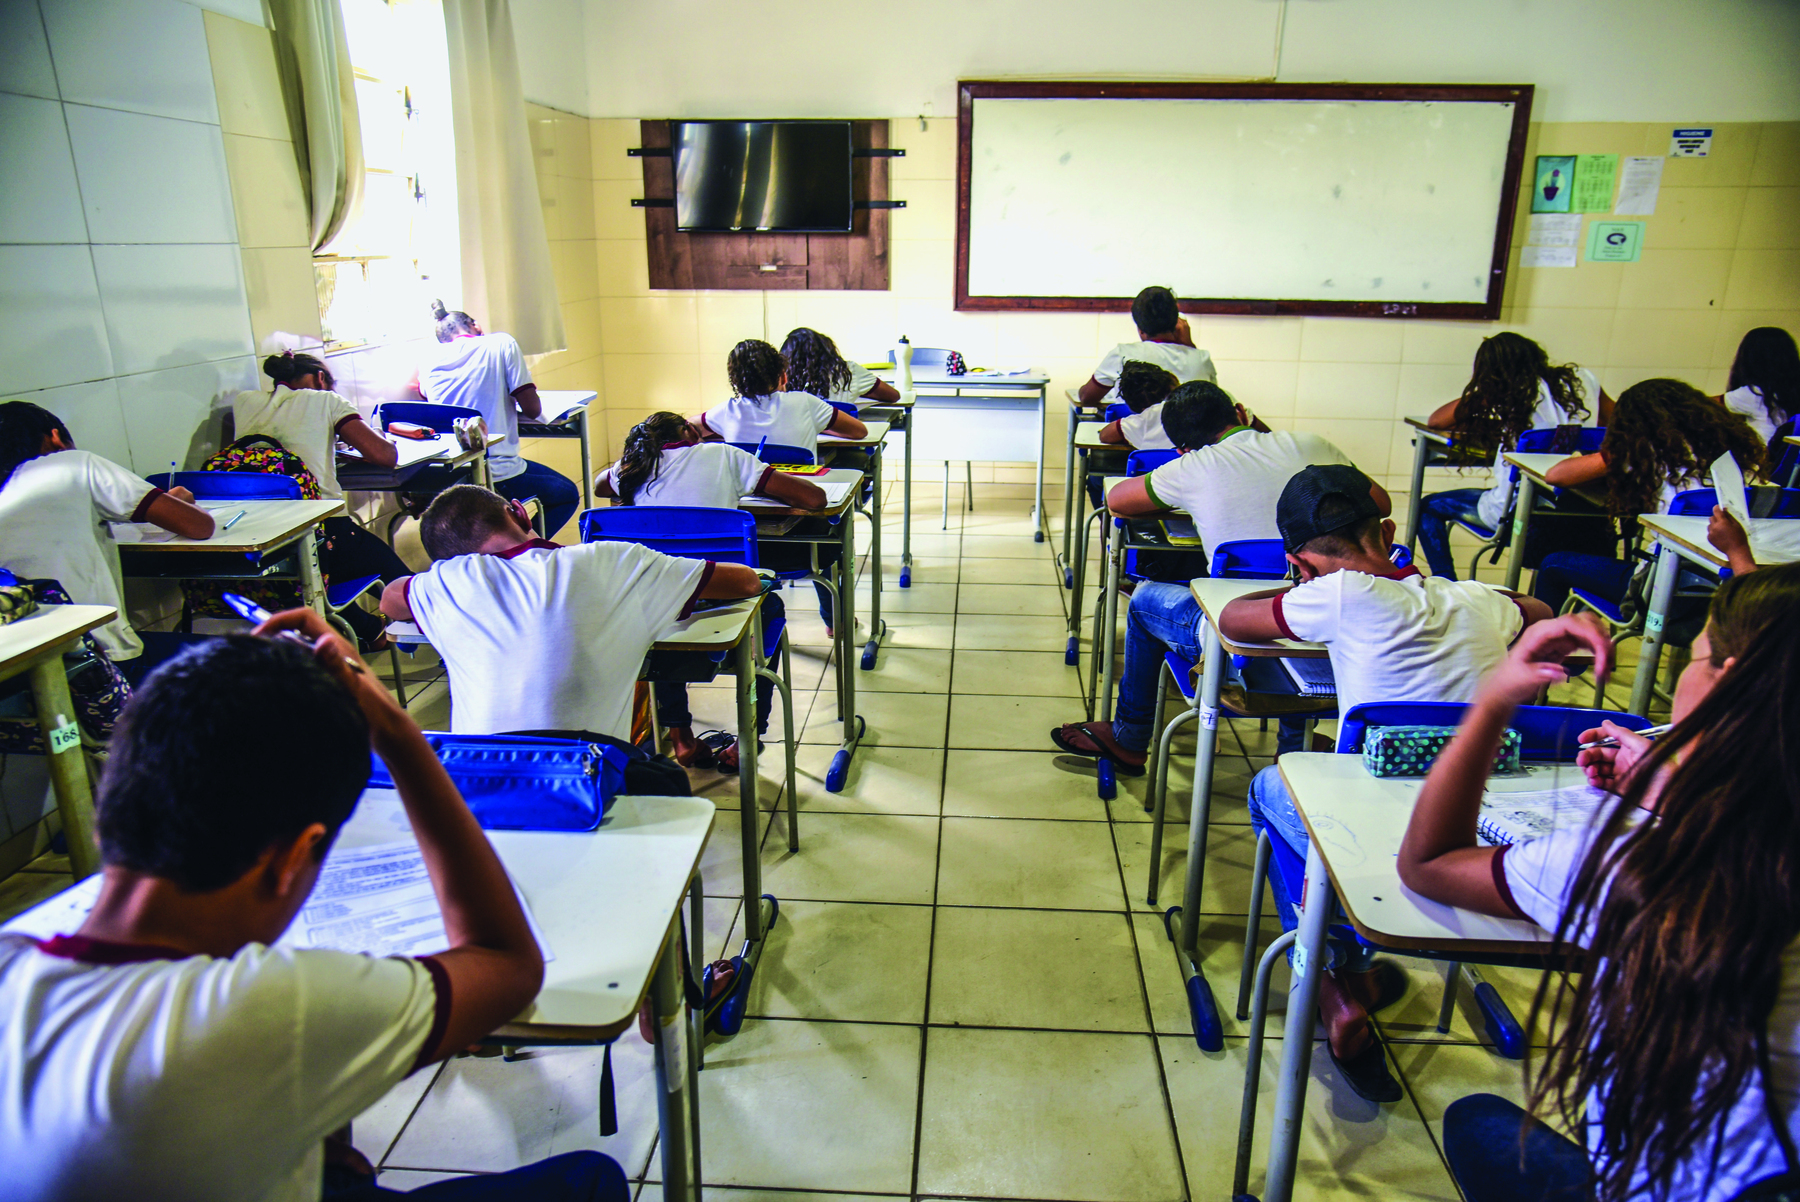 Fotografia. Crianças vistas de costas, sentadas em carteiras enfileiradas, em uma sala de aula. Todos escrevem em folhas de papel.